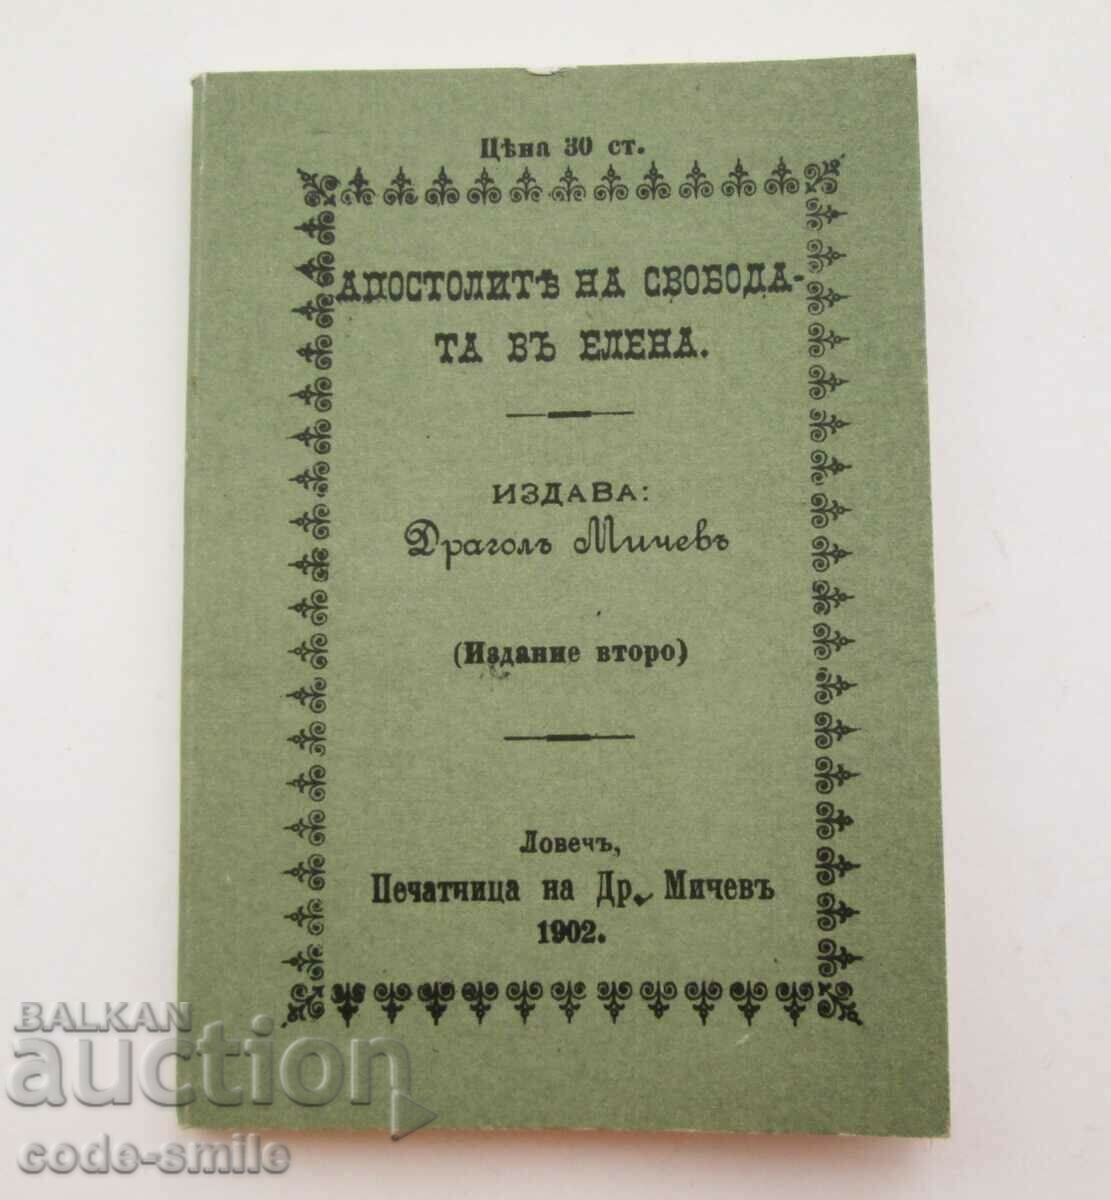 Broșură de carte veche Apostolii libertății în Elena 1902